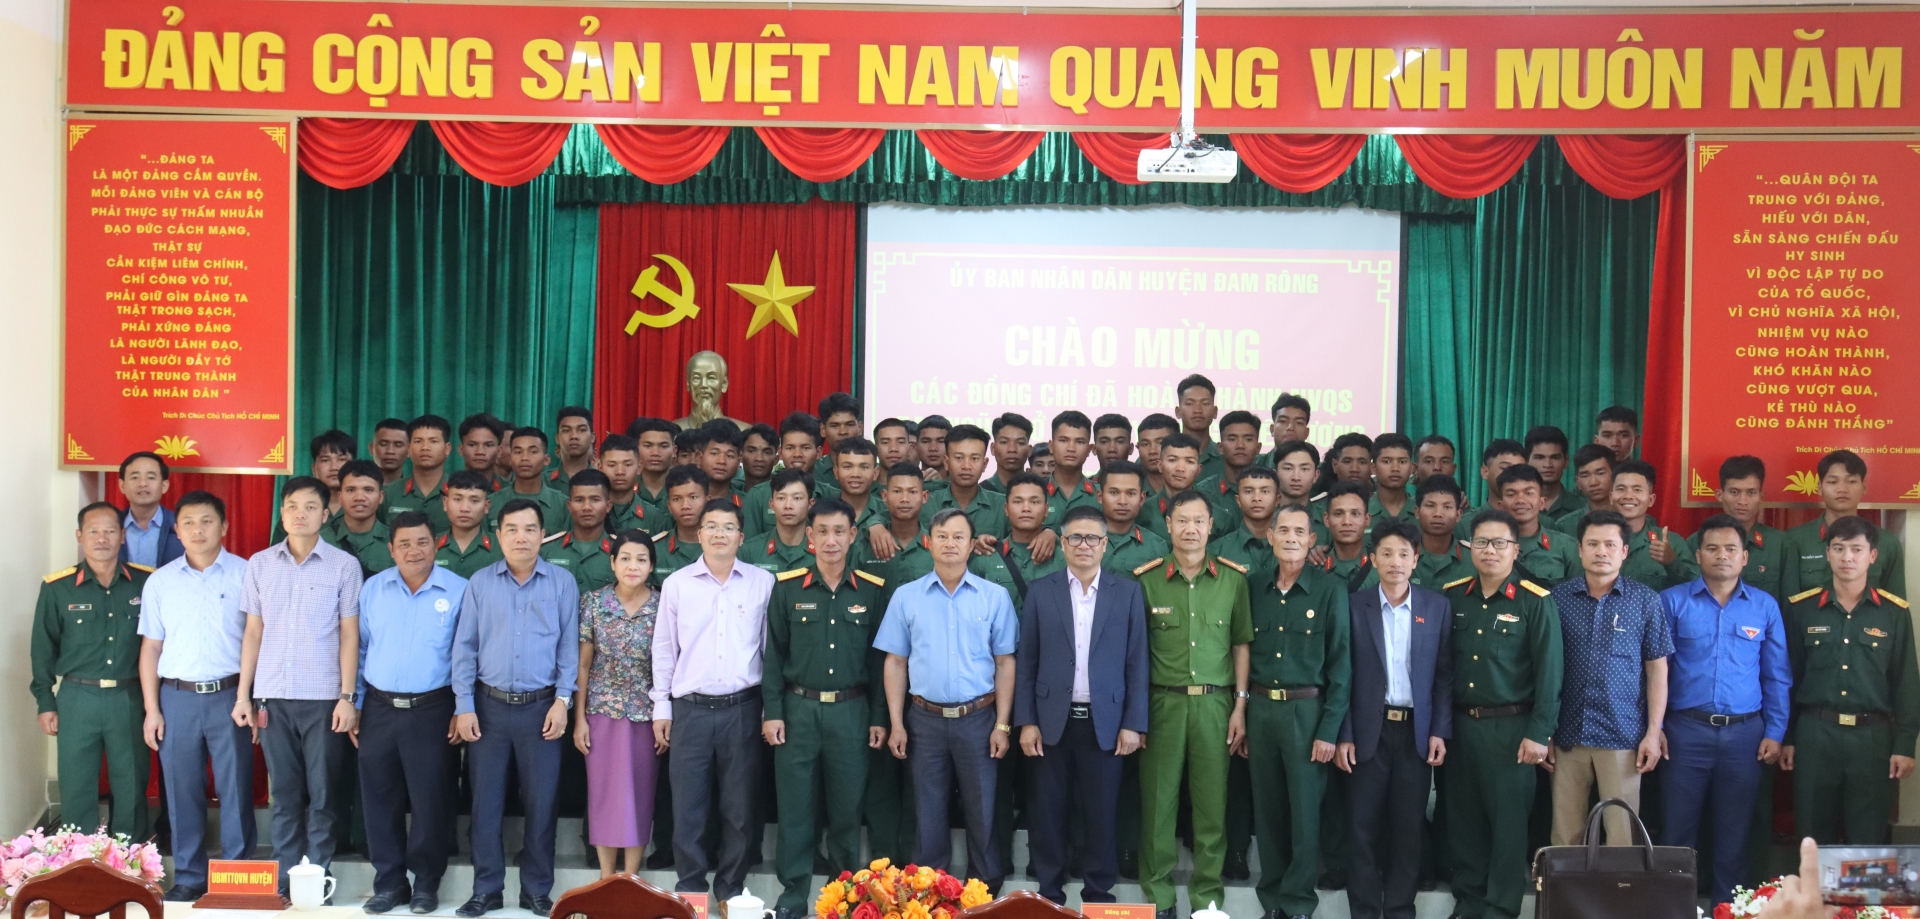 Đồng chí Trương Hữu Đồng – Chủ tịch UBND huyện cùng các đồng chí trong Ban Thường vụ Huyện ủy, lãnh đạo các cơ quan, đơn vị, địa phương và các quân nhân